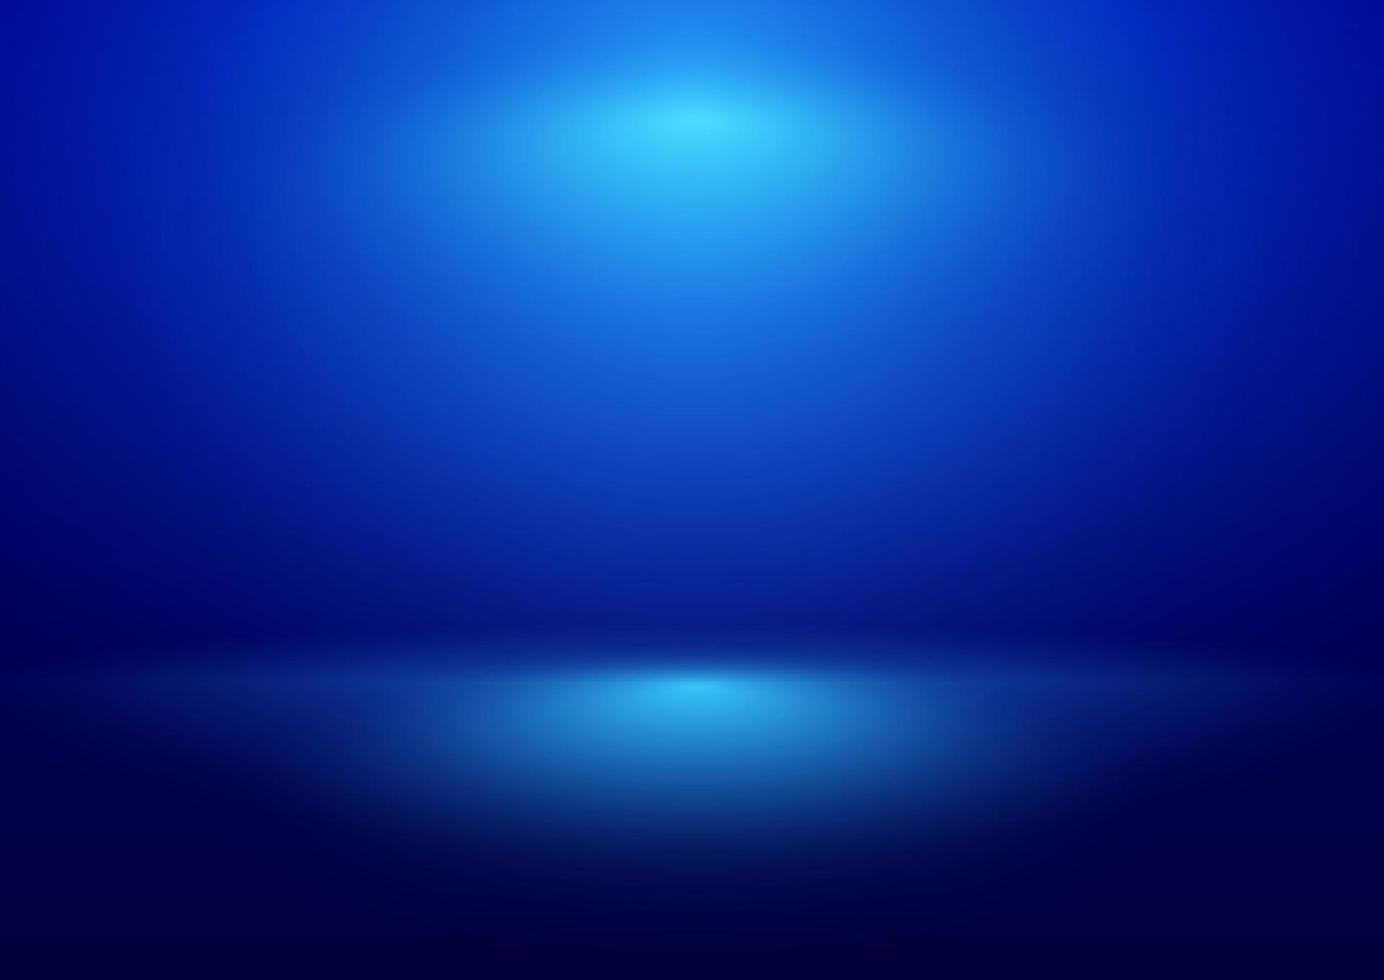 luz de frash abstrata brilhando sobre o fundo azul com desfoque de gradiente. imagem pode ser usada como ilustração, imagem de fundo de publicidade do produto, modelo e pano de fundo. vetor